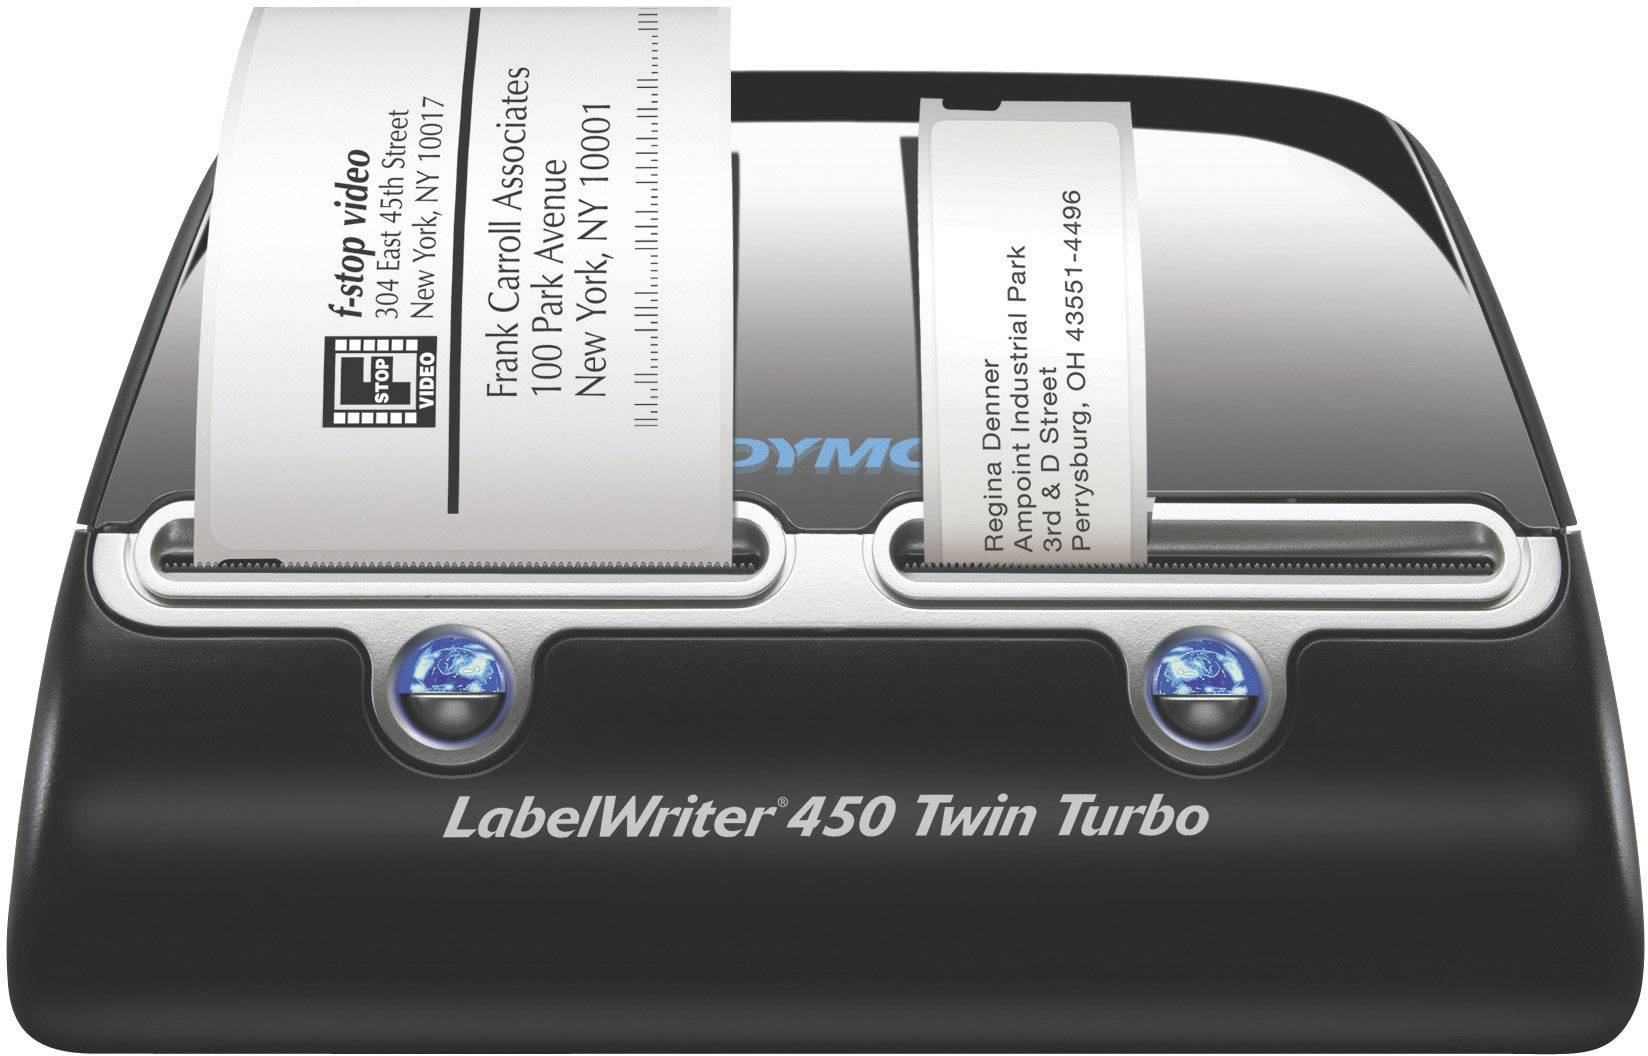 お気に入りの DYMO LabelWriter 450 Duo Label printer DT TT Roll 2.44 in 600 x 